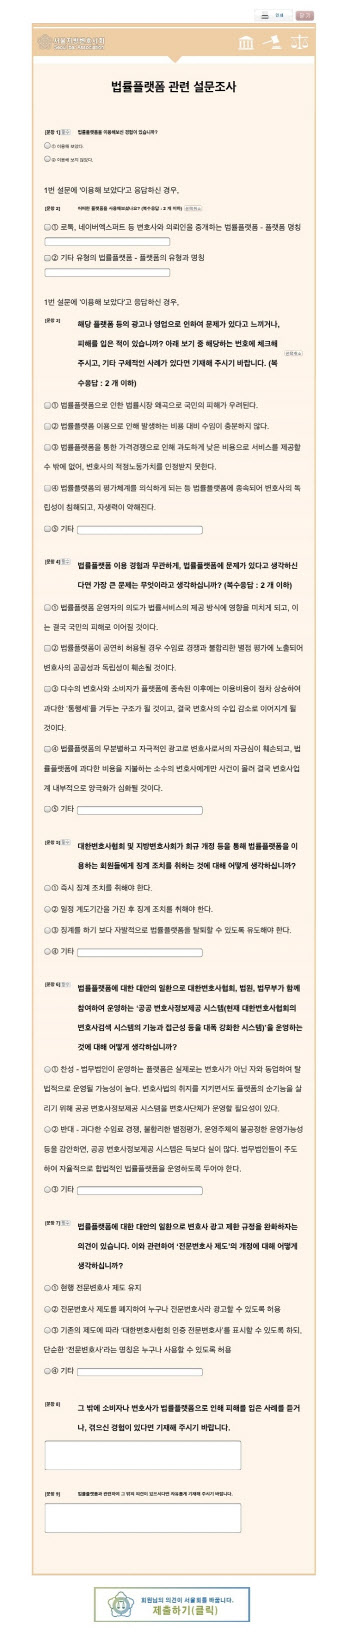 변협, 로톡 불기소에도 변호사 징계 통지…'반대 변호사 모임' 성명